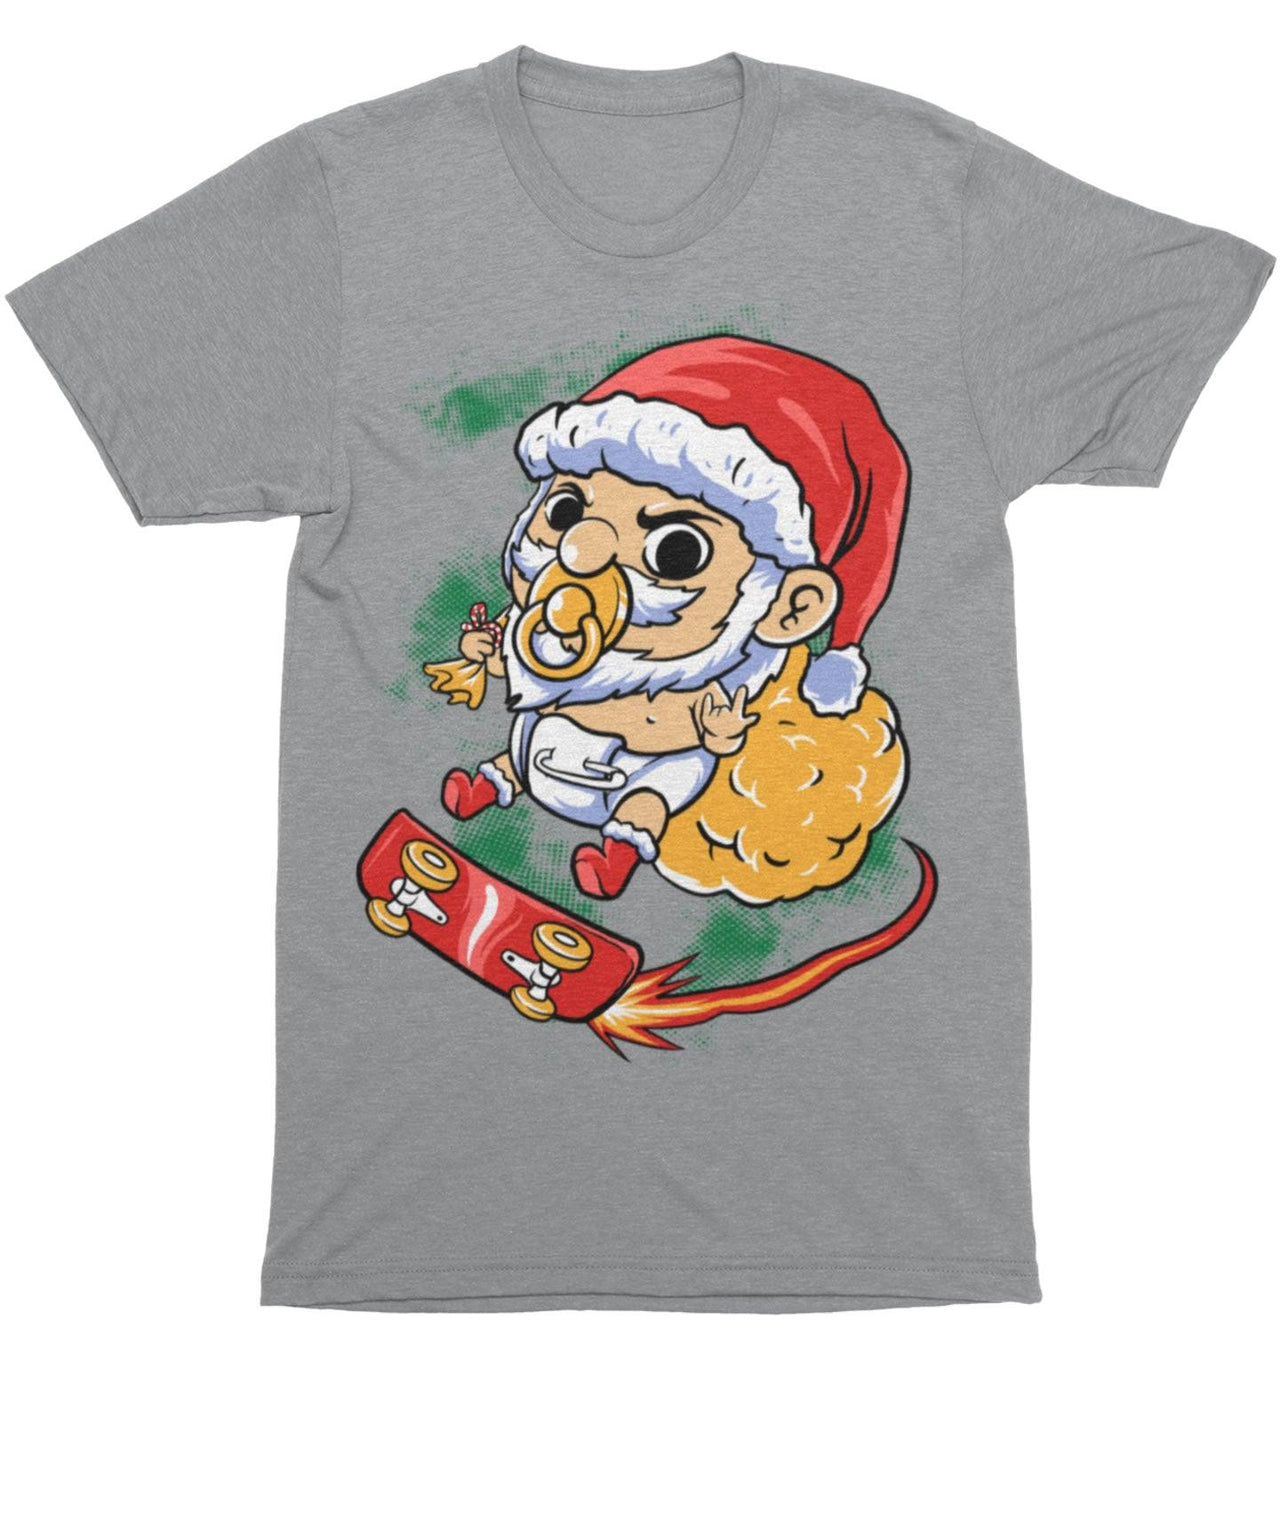 Skateboarding Baby Santa Unisex Christmas T-Shirt For Men 8Ball